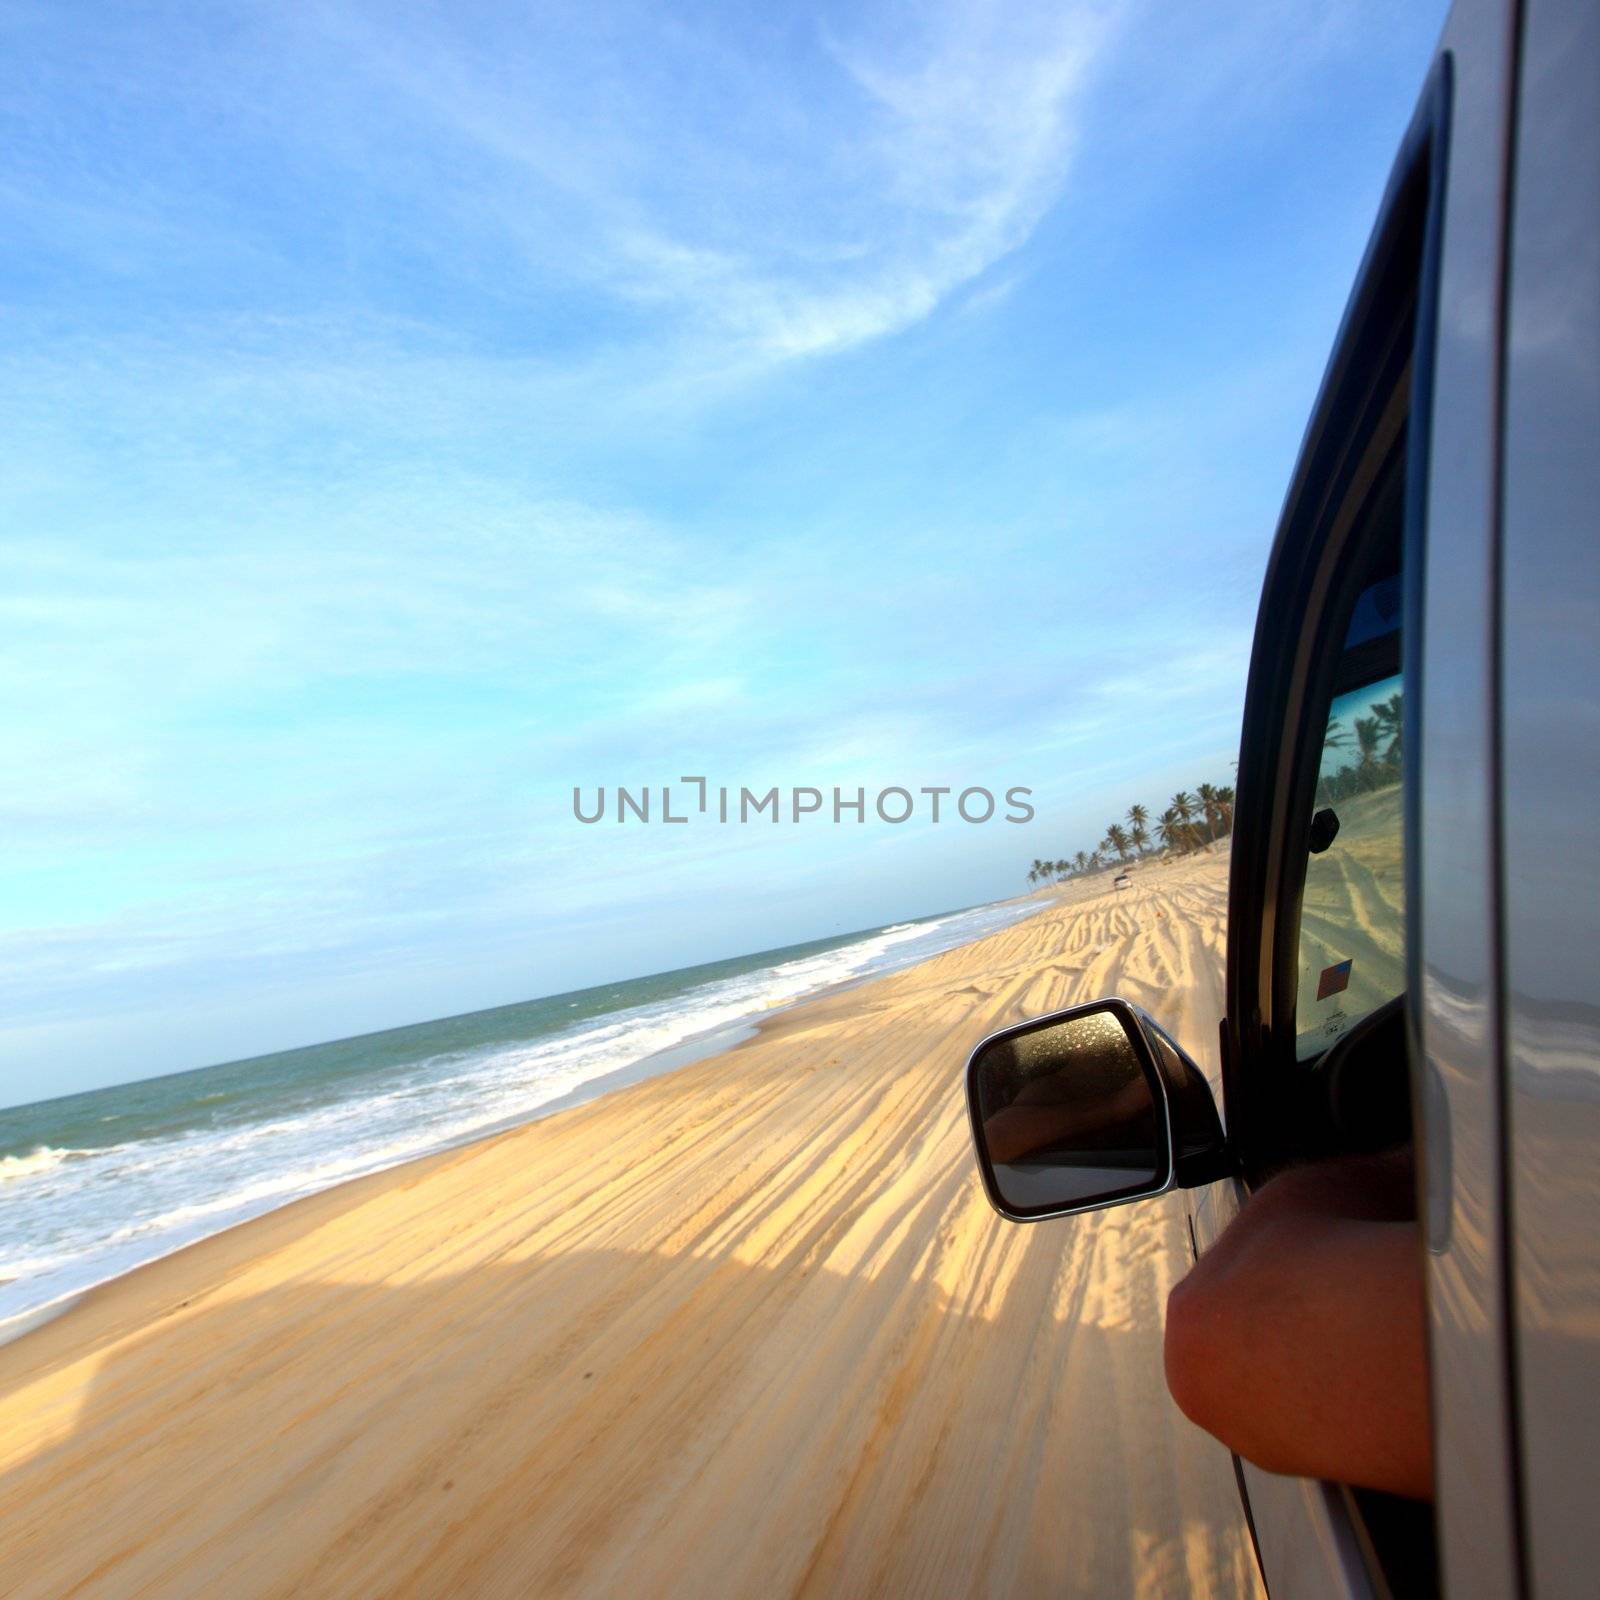 beach drive on allroad car